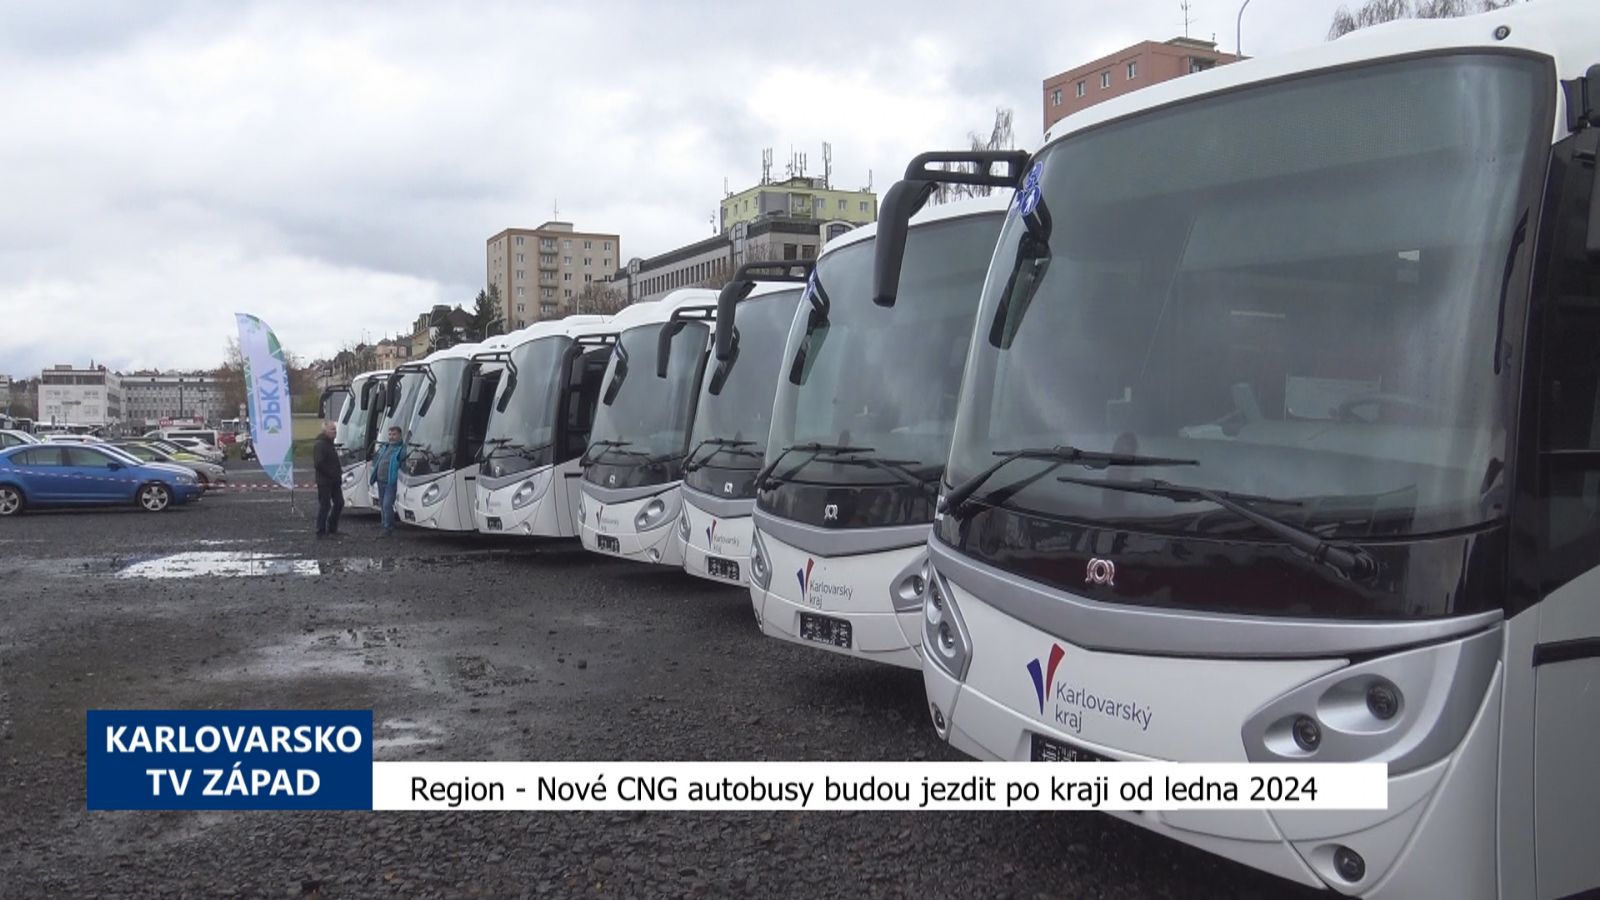 Region: Nové CNG autobusy začnou jezdit v kraji od ledna 2024 (TV Západ)